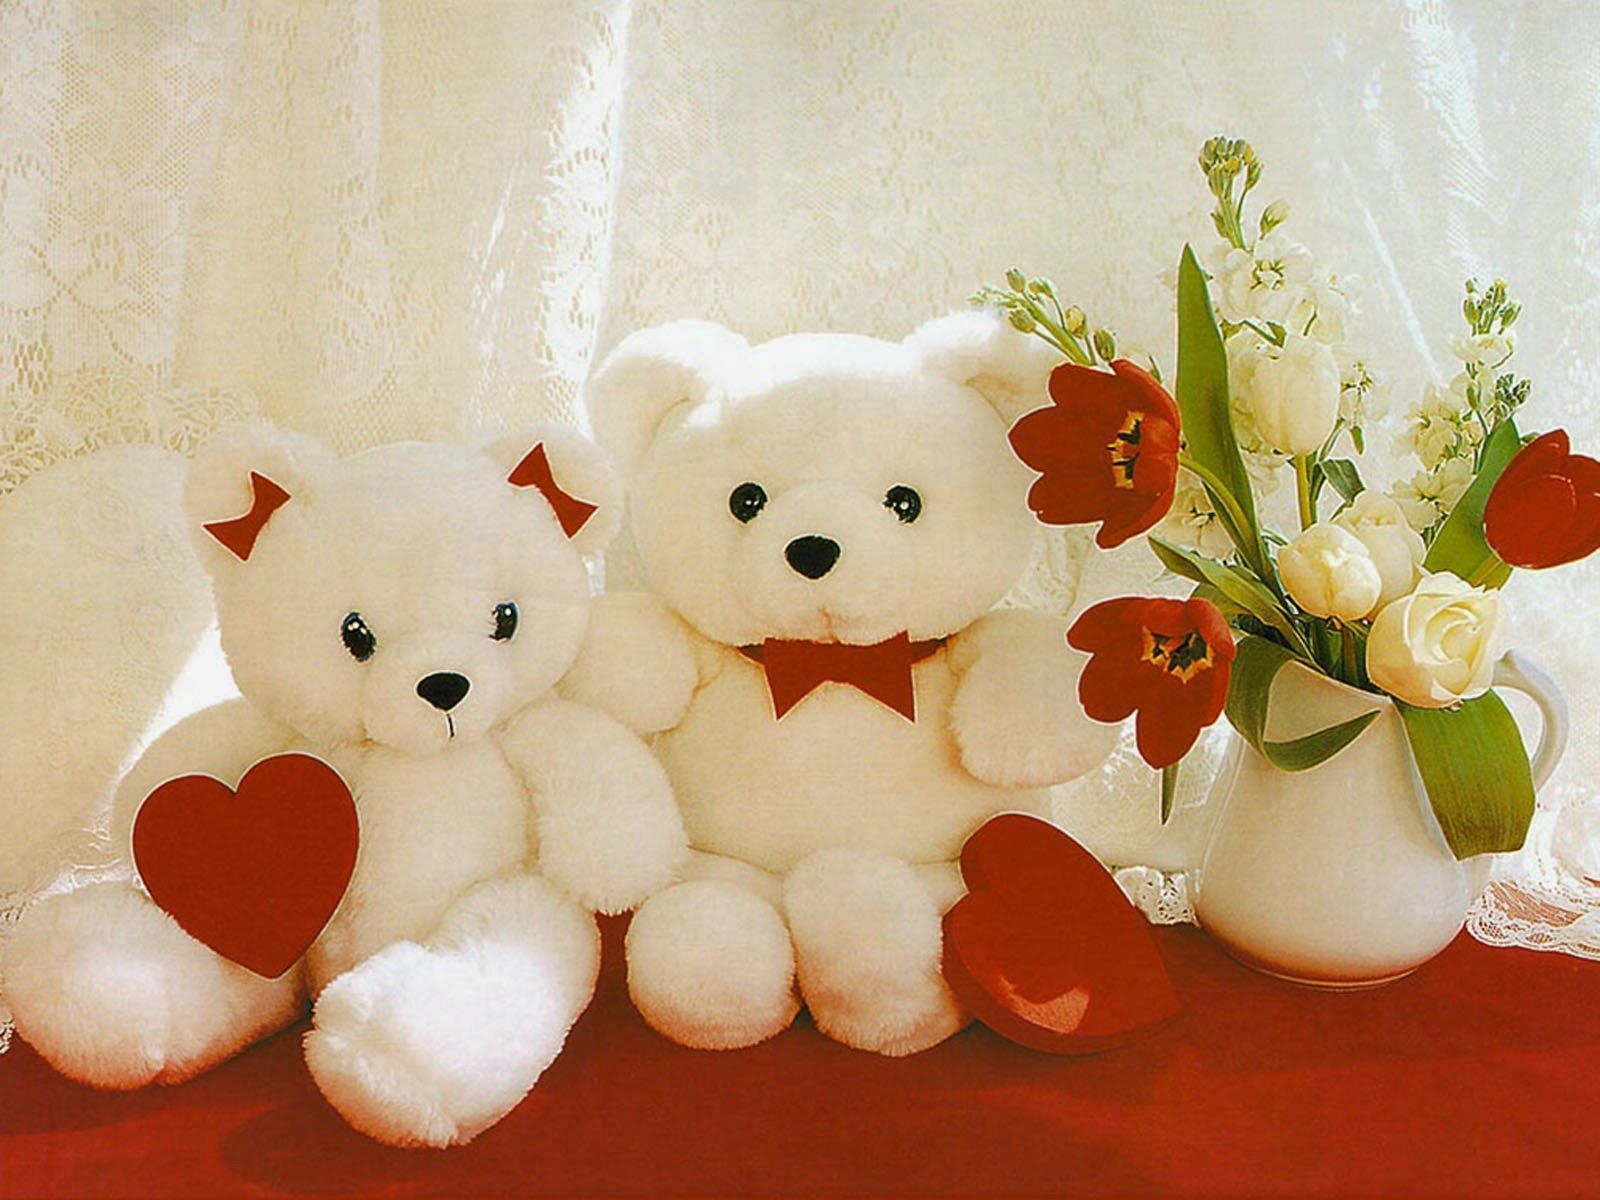 Flower Teddy Bear Wallpaper Free .wallpaperaccess.com